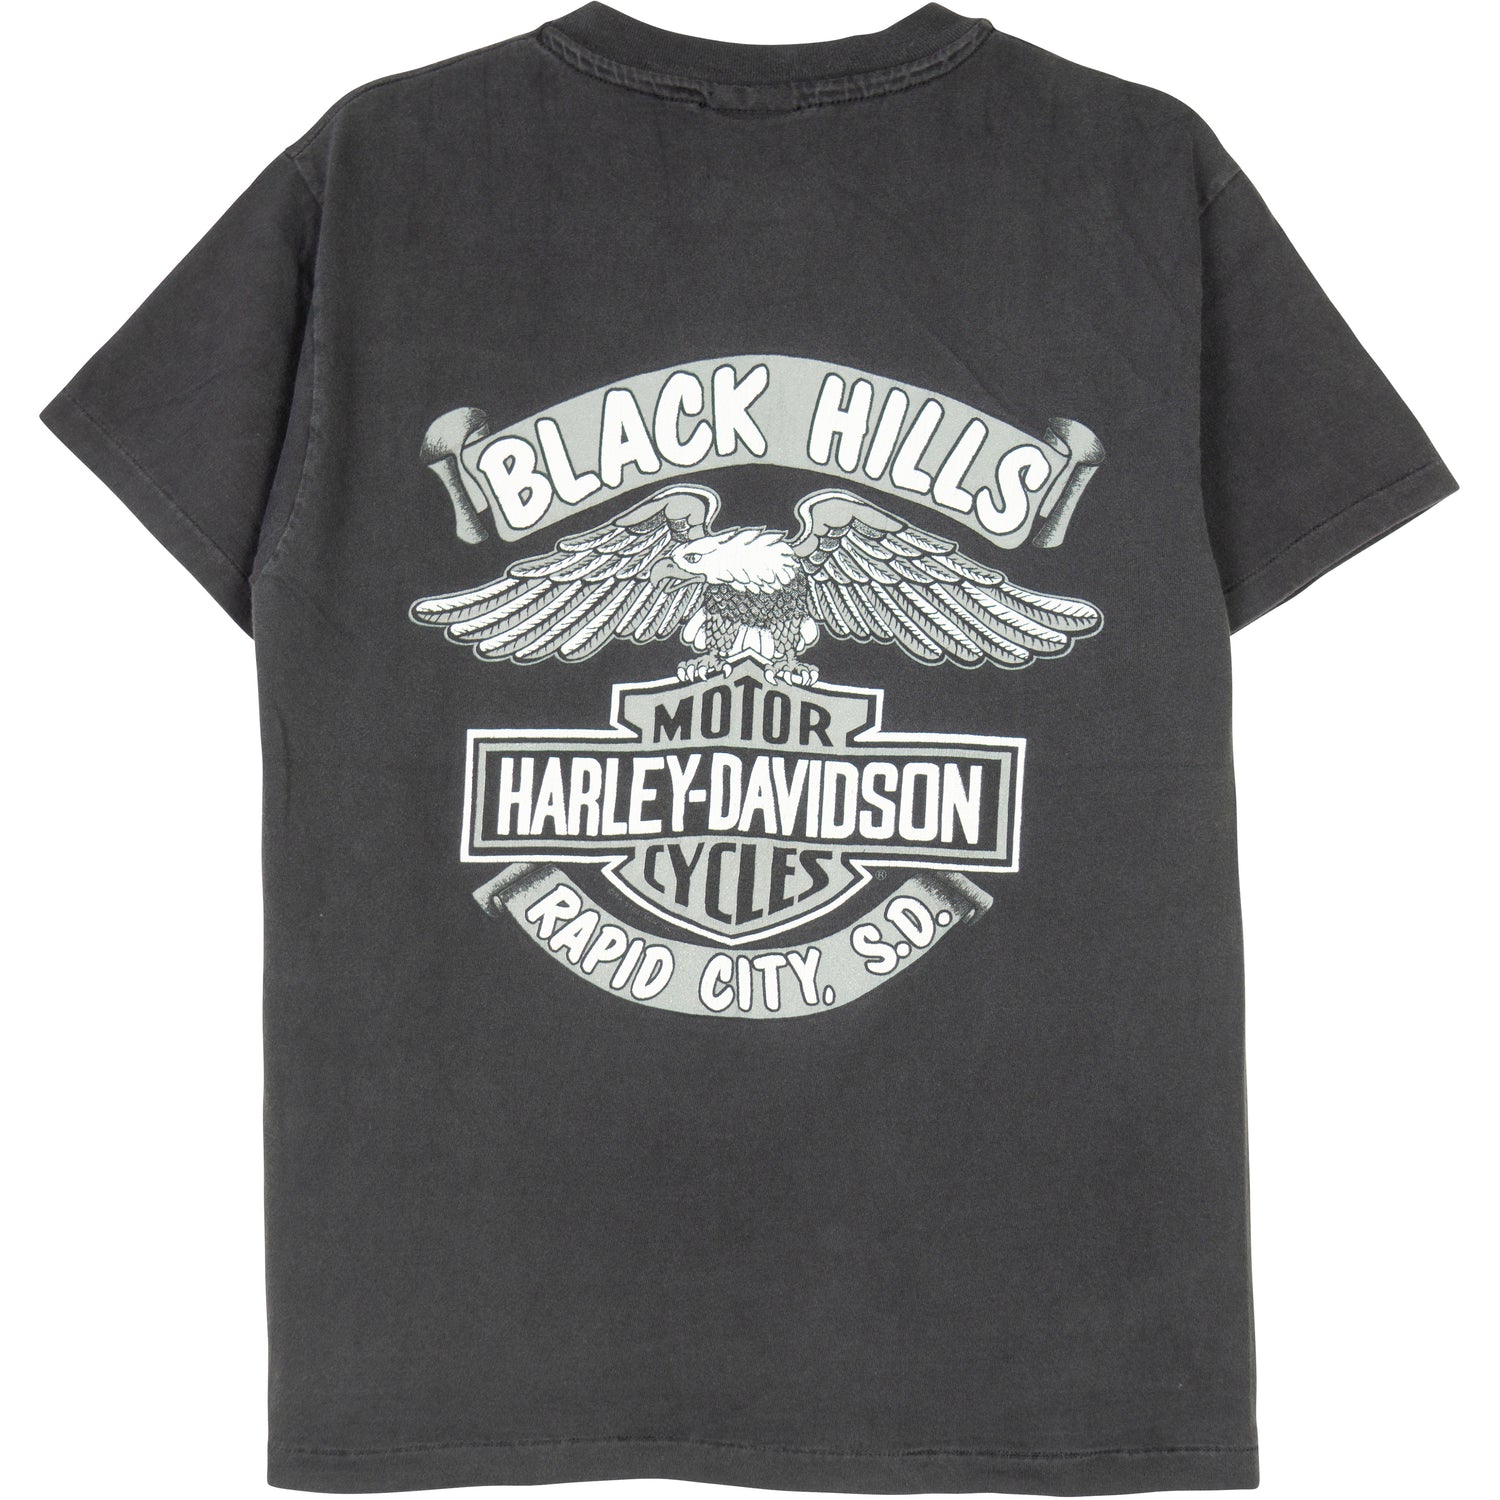 VINTAGE HARLEY DAVIDSON BLACK HILLS T-SHIRT